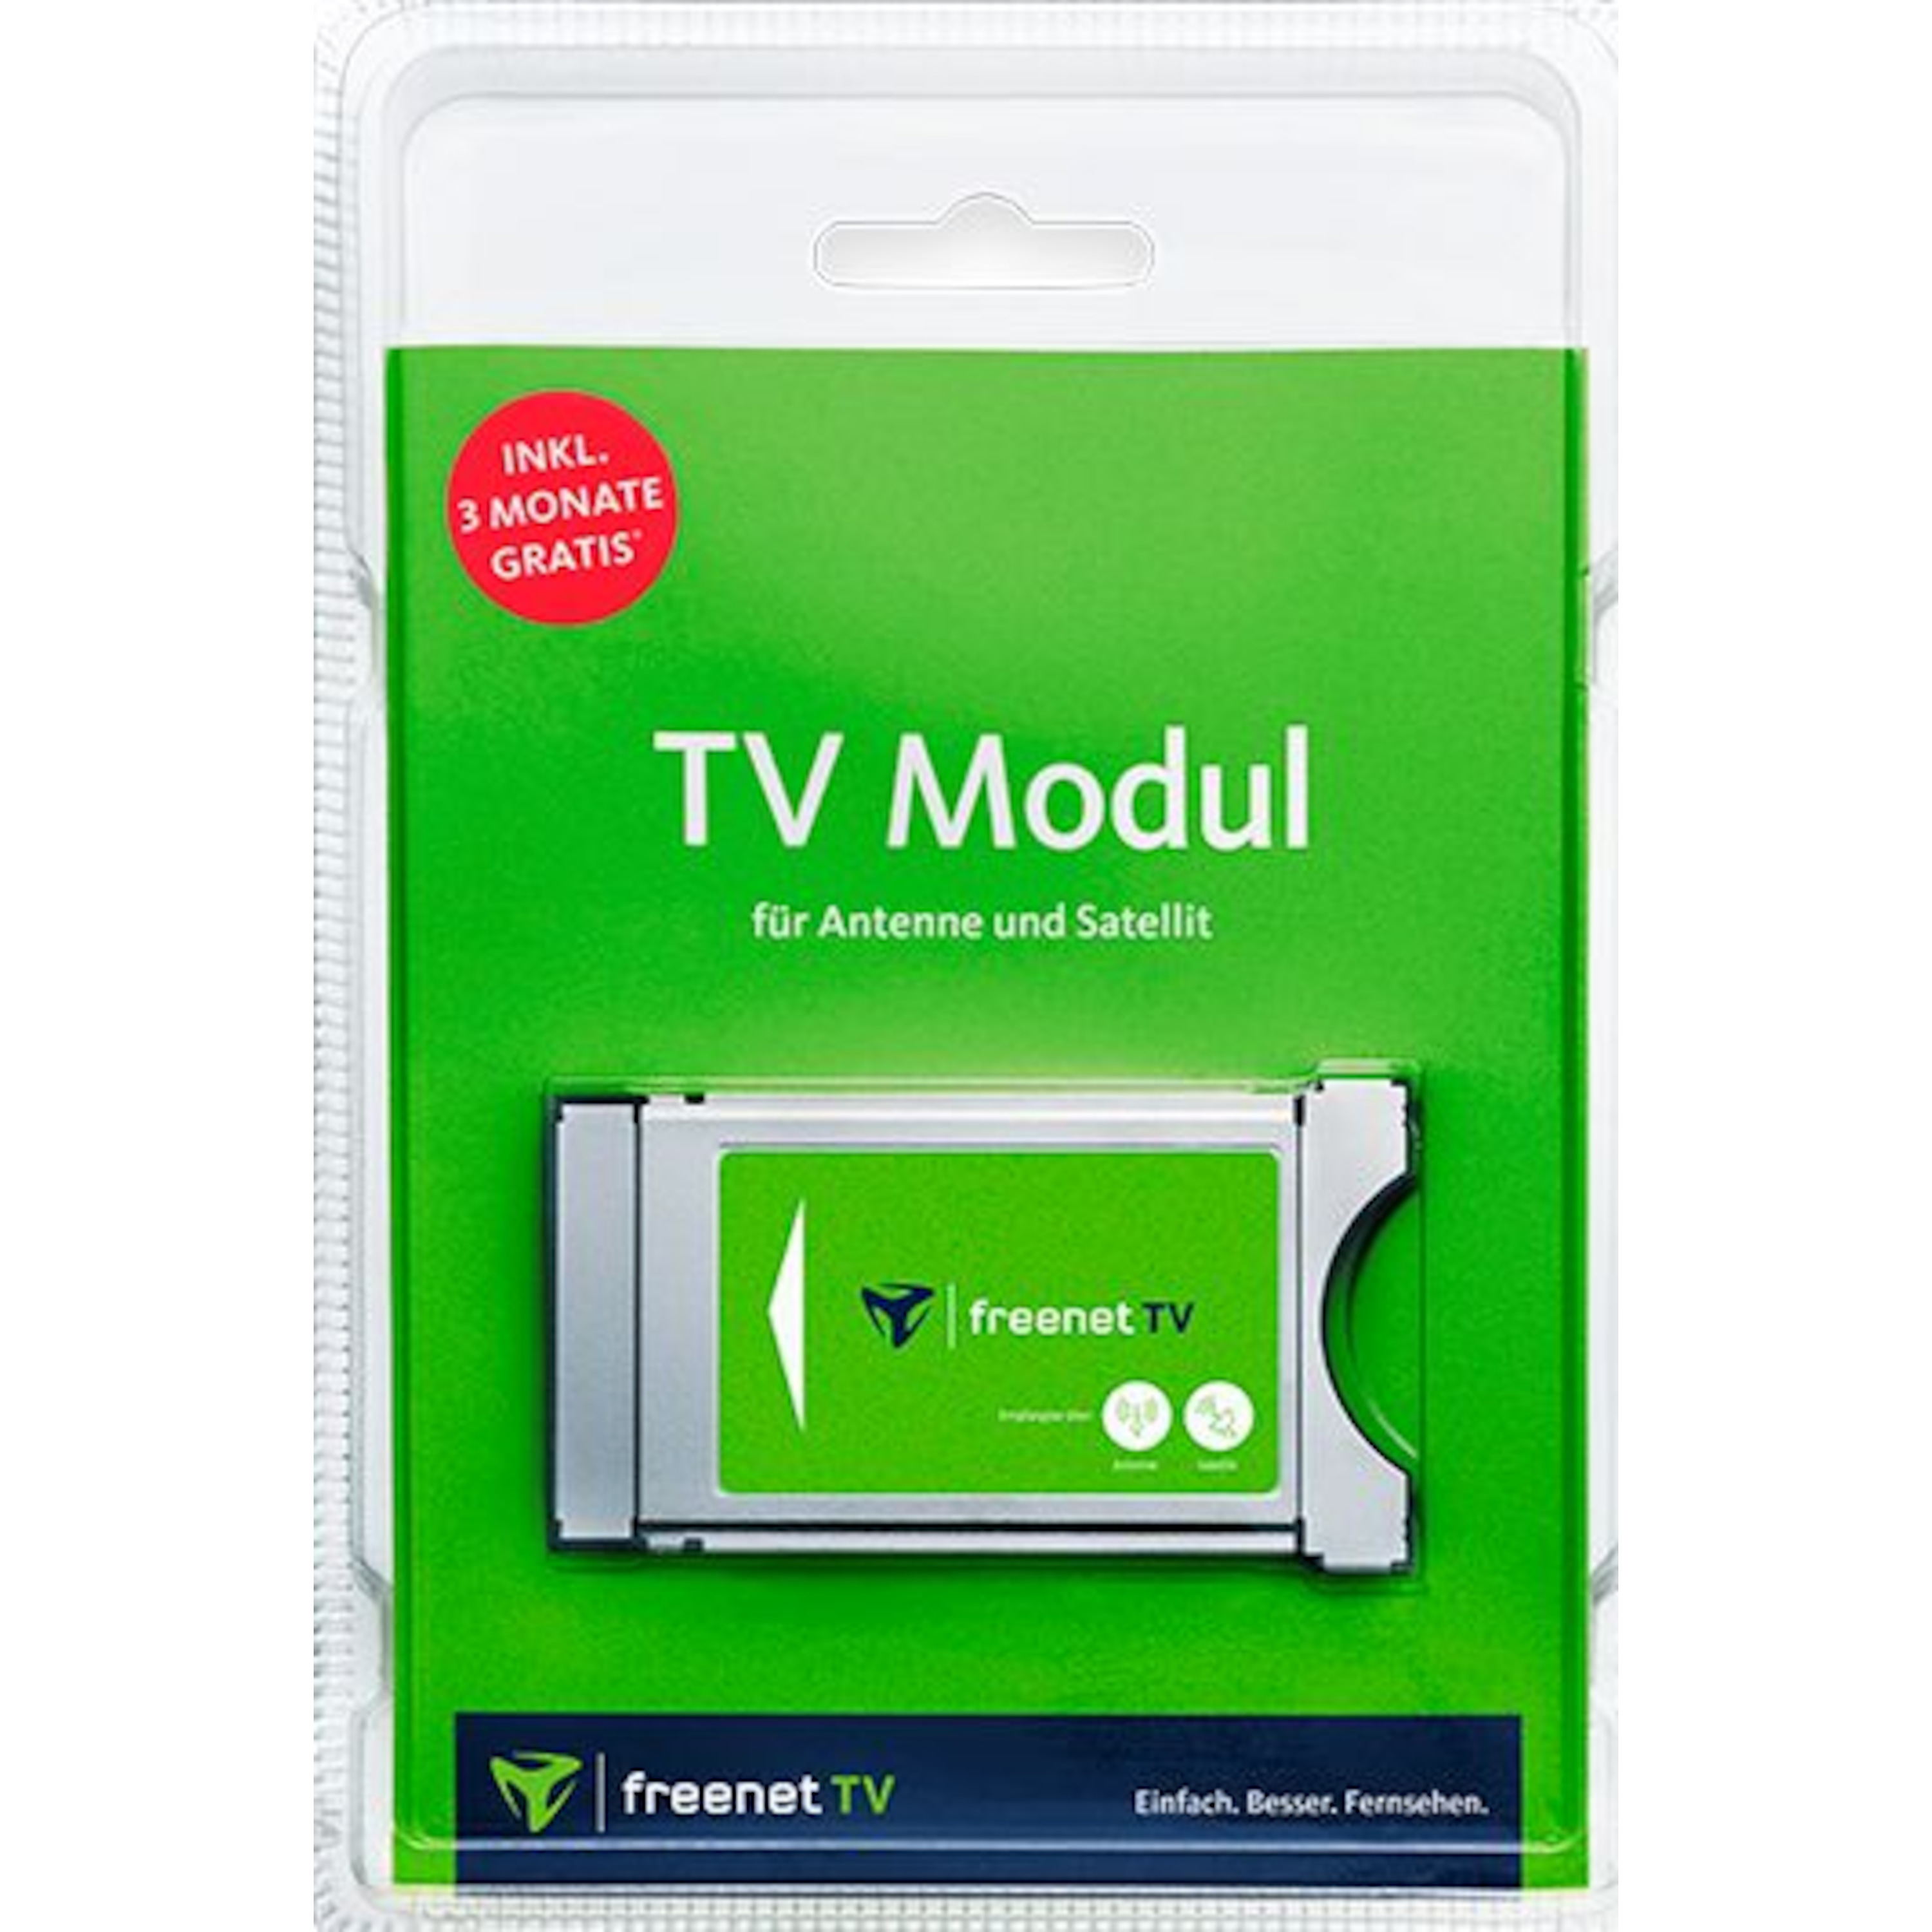 MEDION® LIFE® E11941 Fernseher, 47 cm (18,5'') LCD-TV, inkl. DVB-T 2 HD Modul (3 Monate freenet TV gratis) - ARTIKELSET